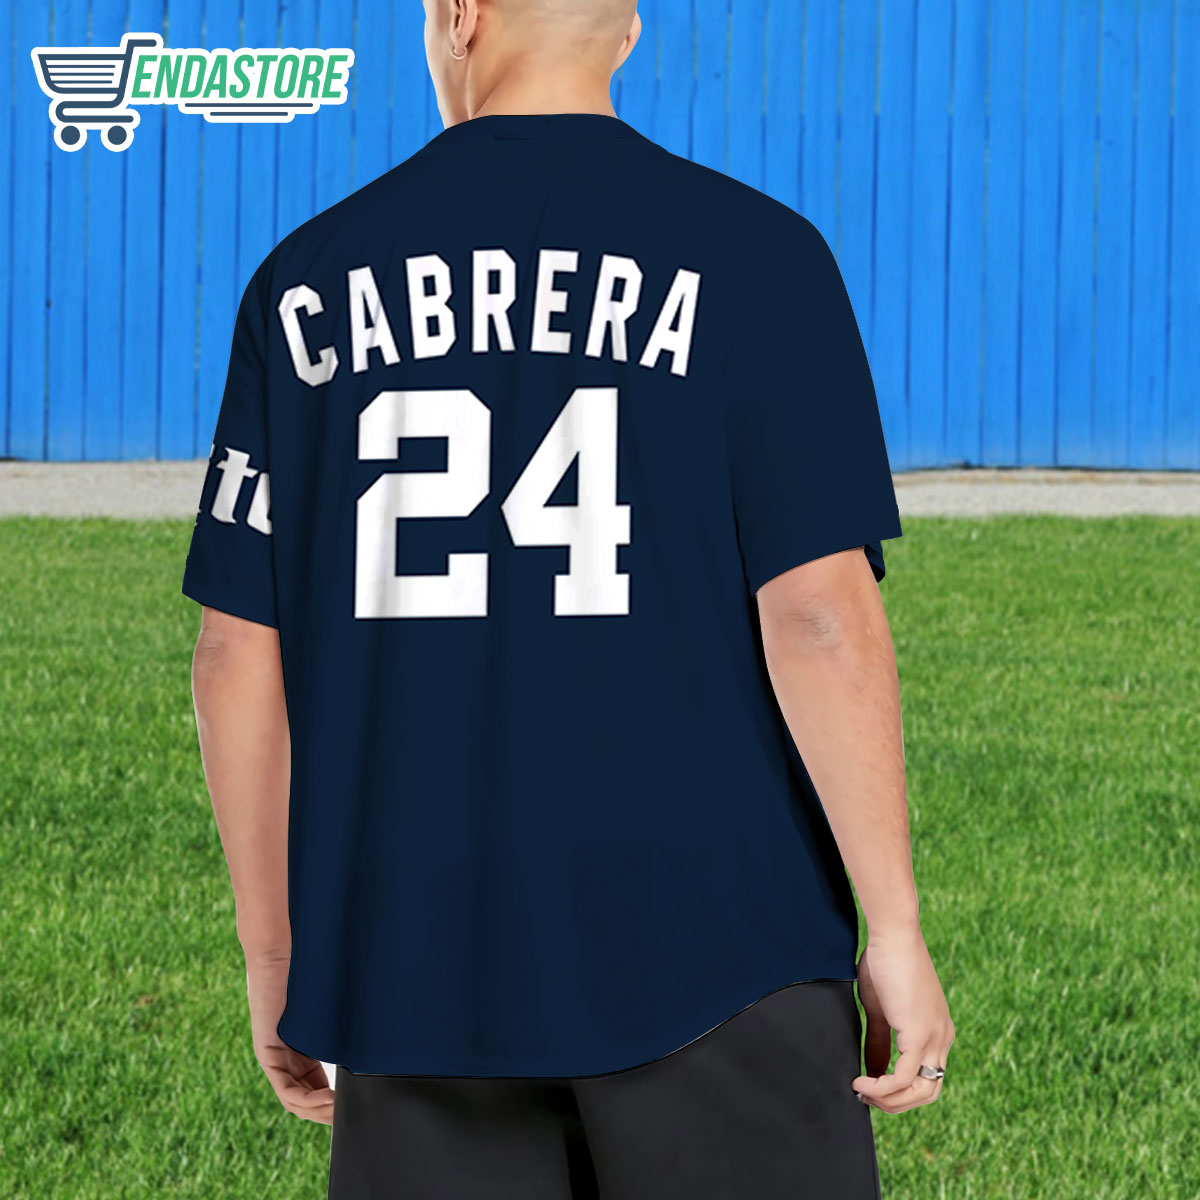 Official Miguel Cabrera Jersey, Miguel Cabrera Shirts, Baseball